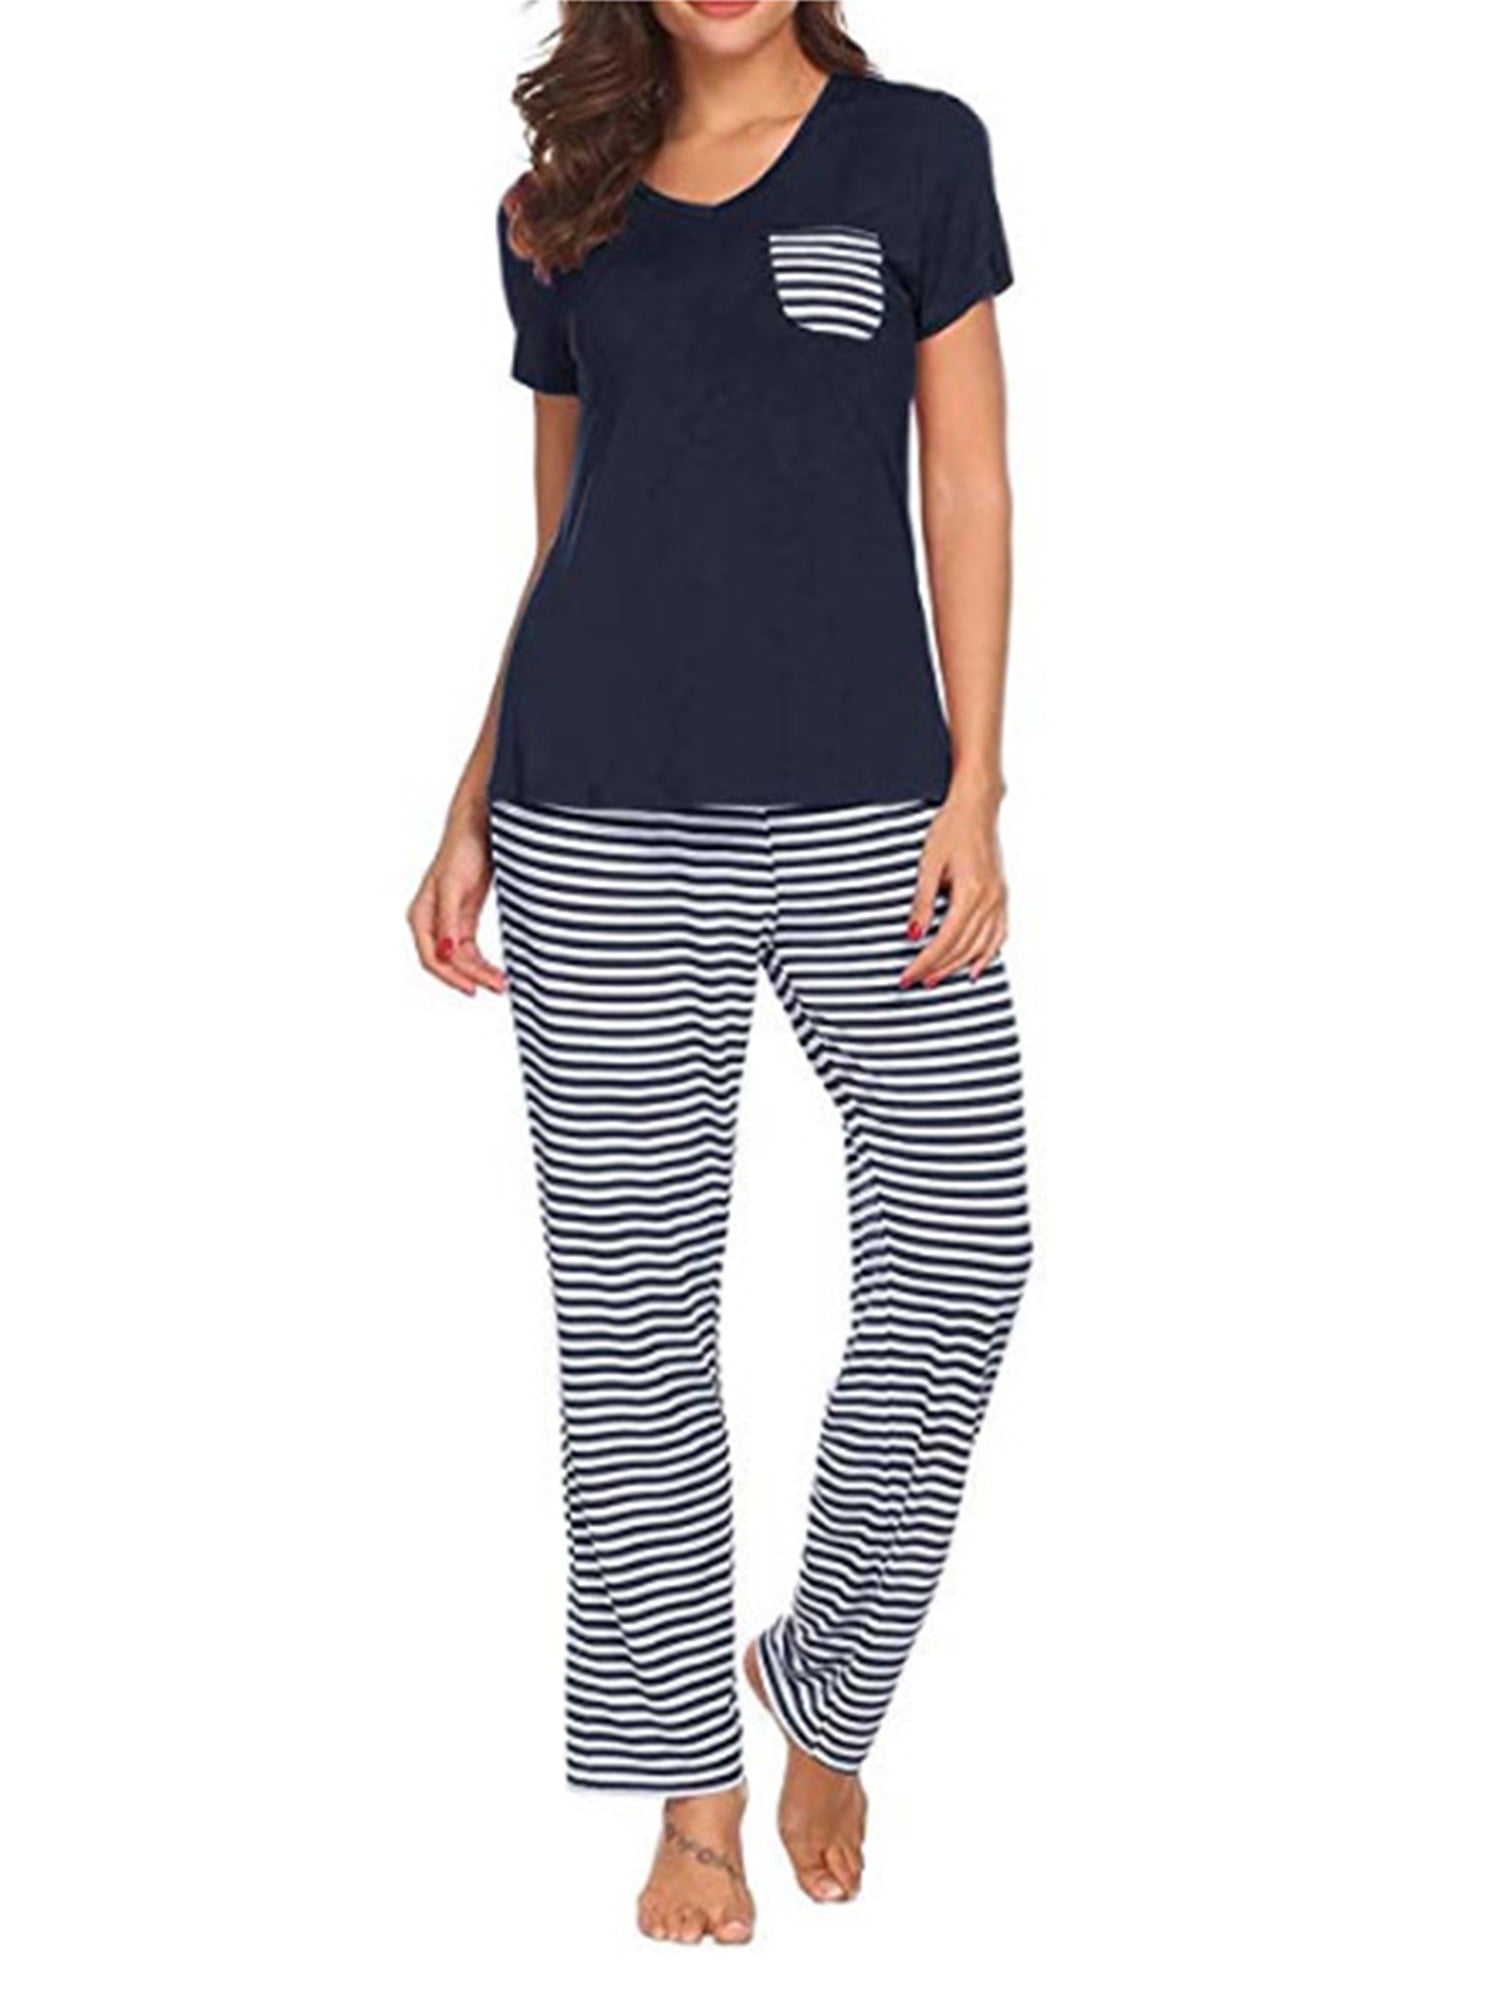 Pajamas for Women Classic Short Sleeve Sleepwear Set Button Down Nightwear Soft Pjs Sets for Women